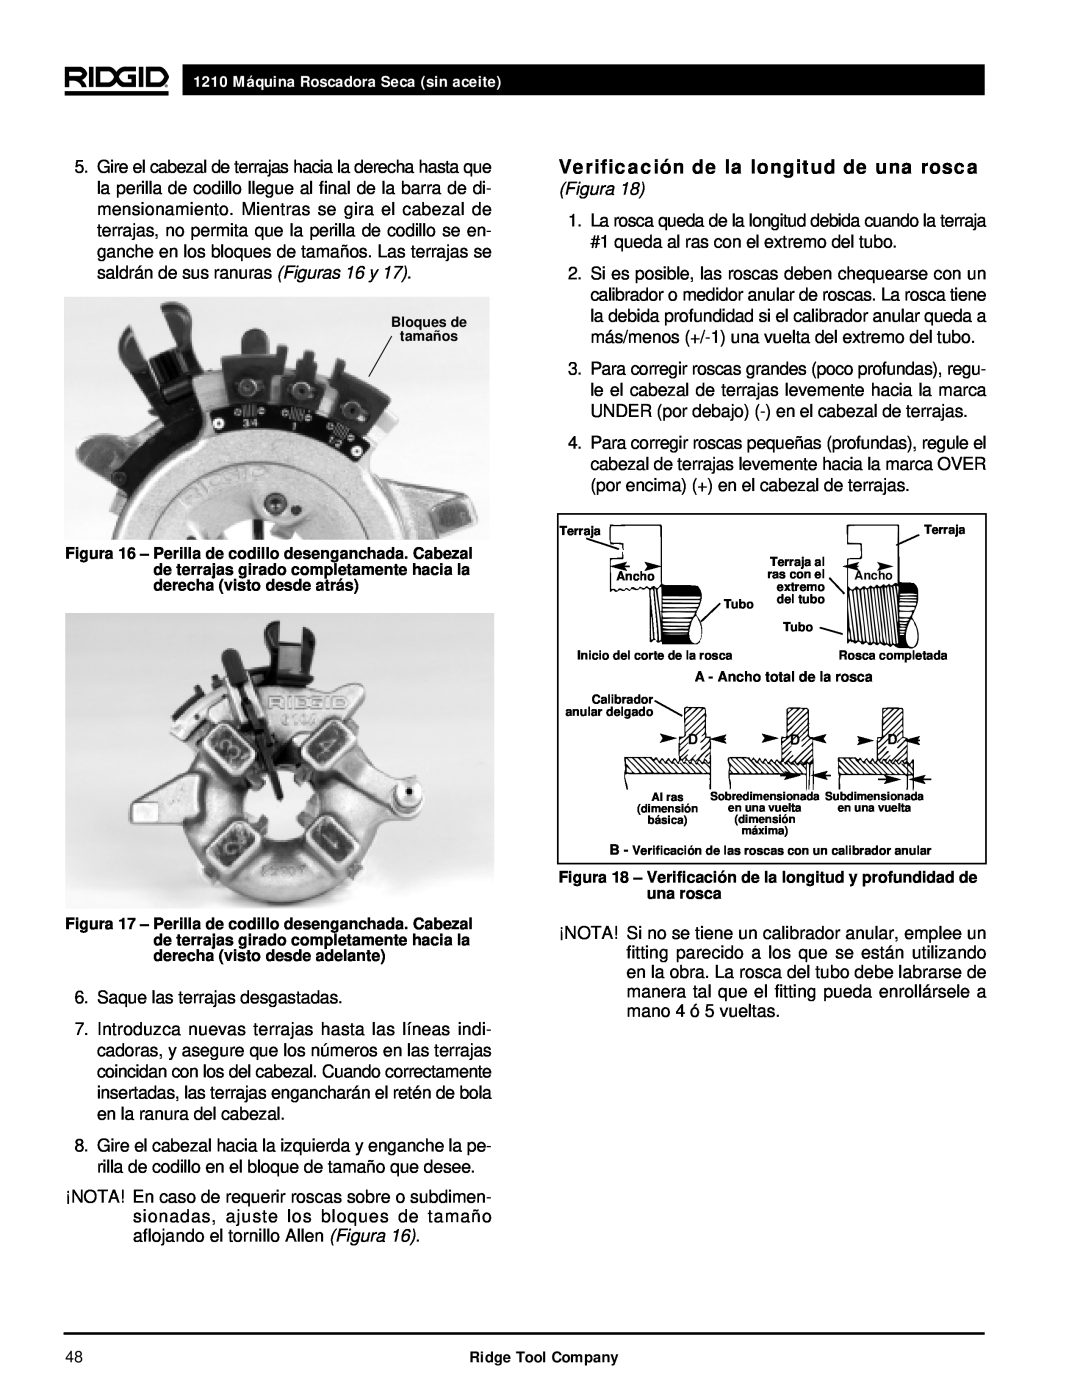 RIDGID manual Verificación de la longitud de una rosca, 1210 Máquina Roscadora Seca sin aceite, Figura 